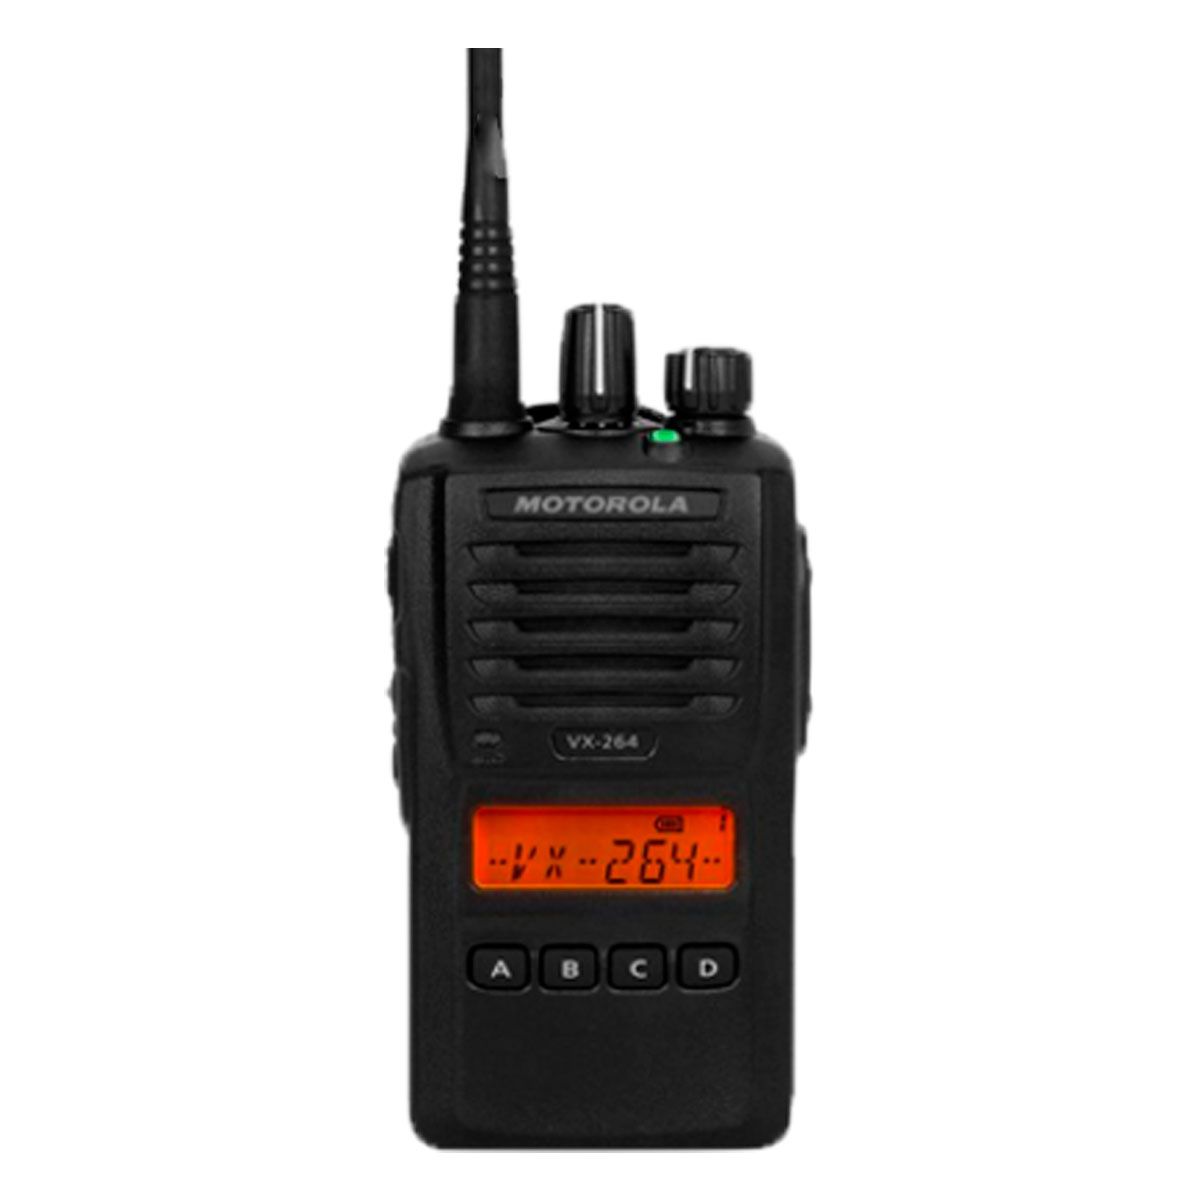 Radio Motorola VX-264 Analógico UHF 403-470 MHz